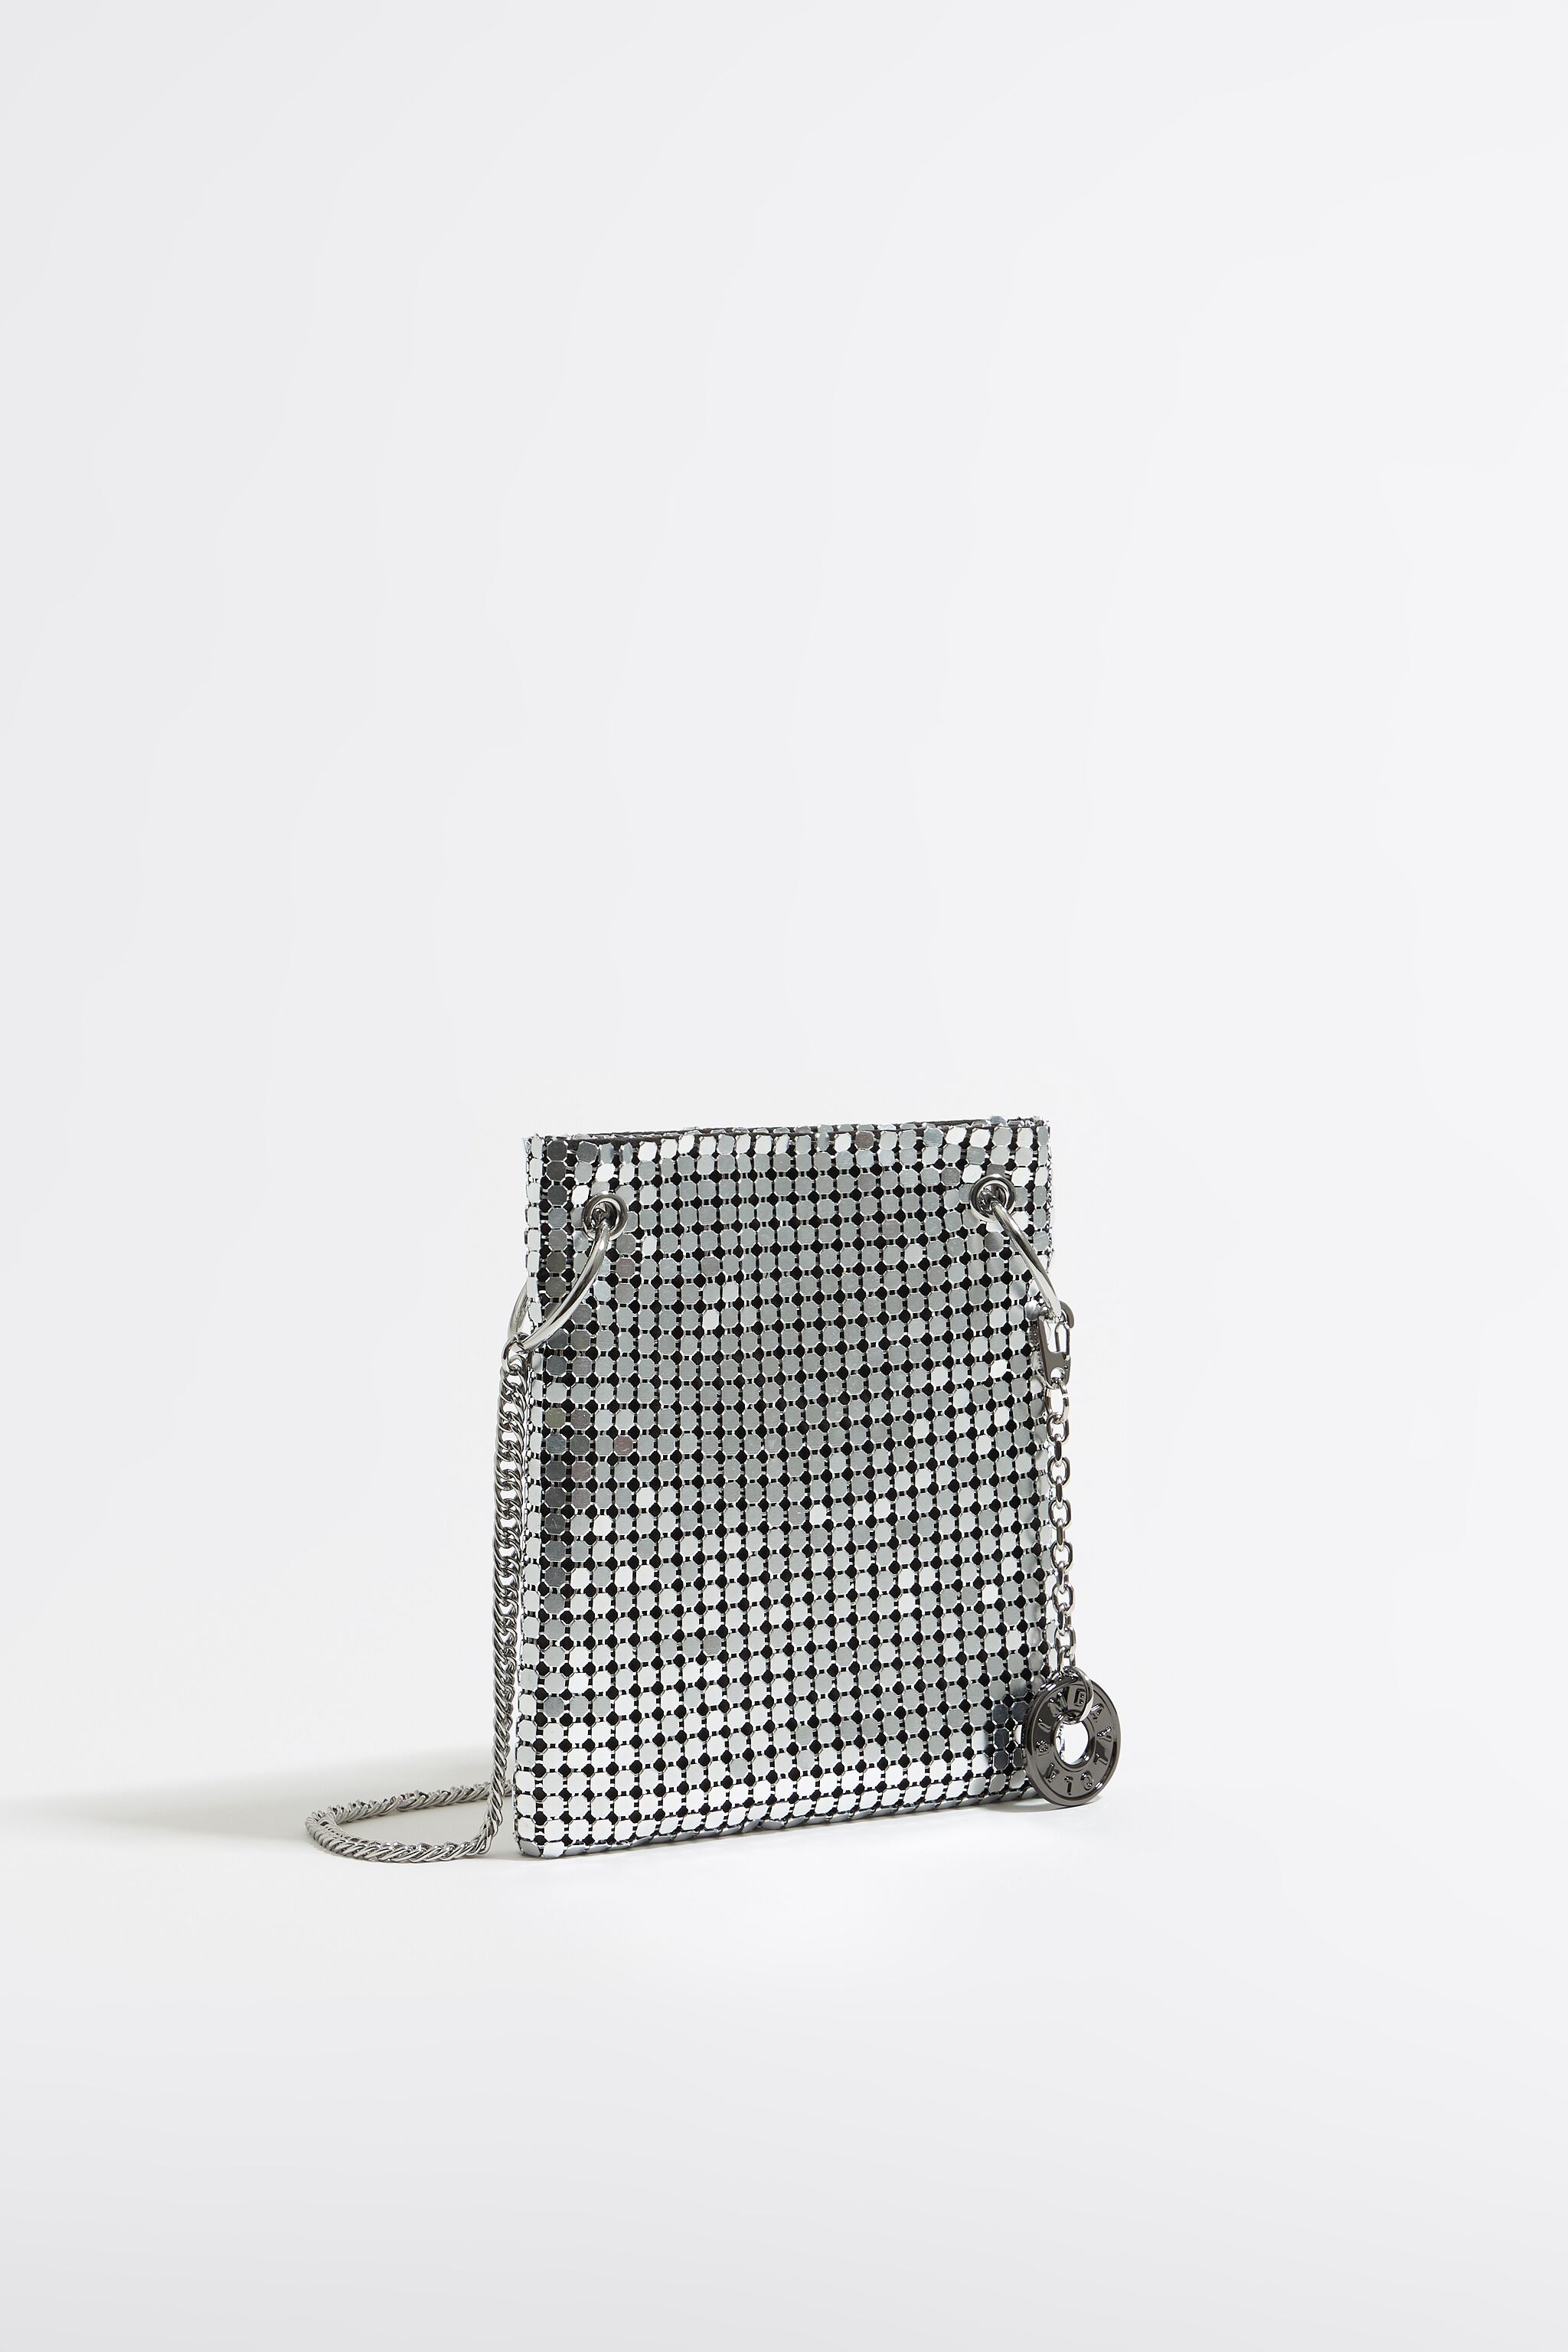 Silver metallic mesh mini flat bag